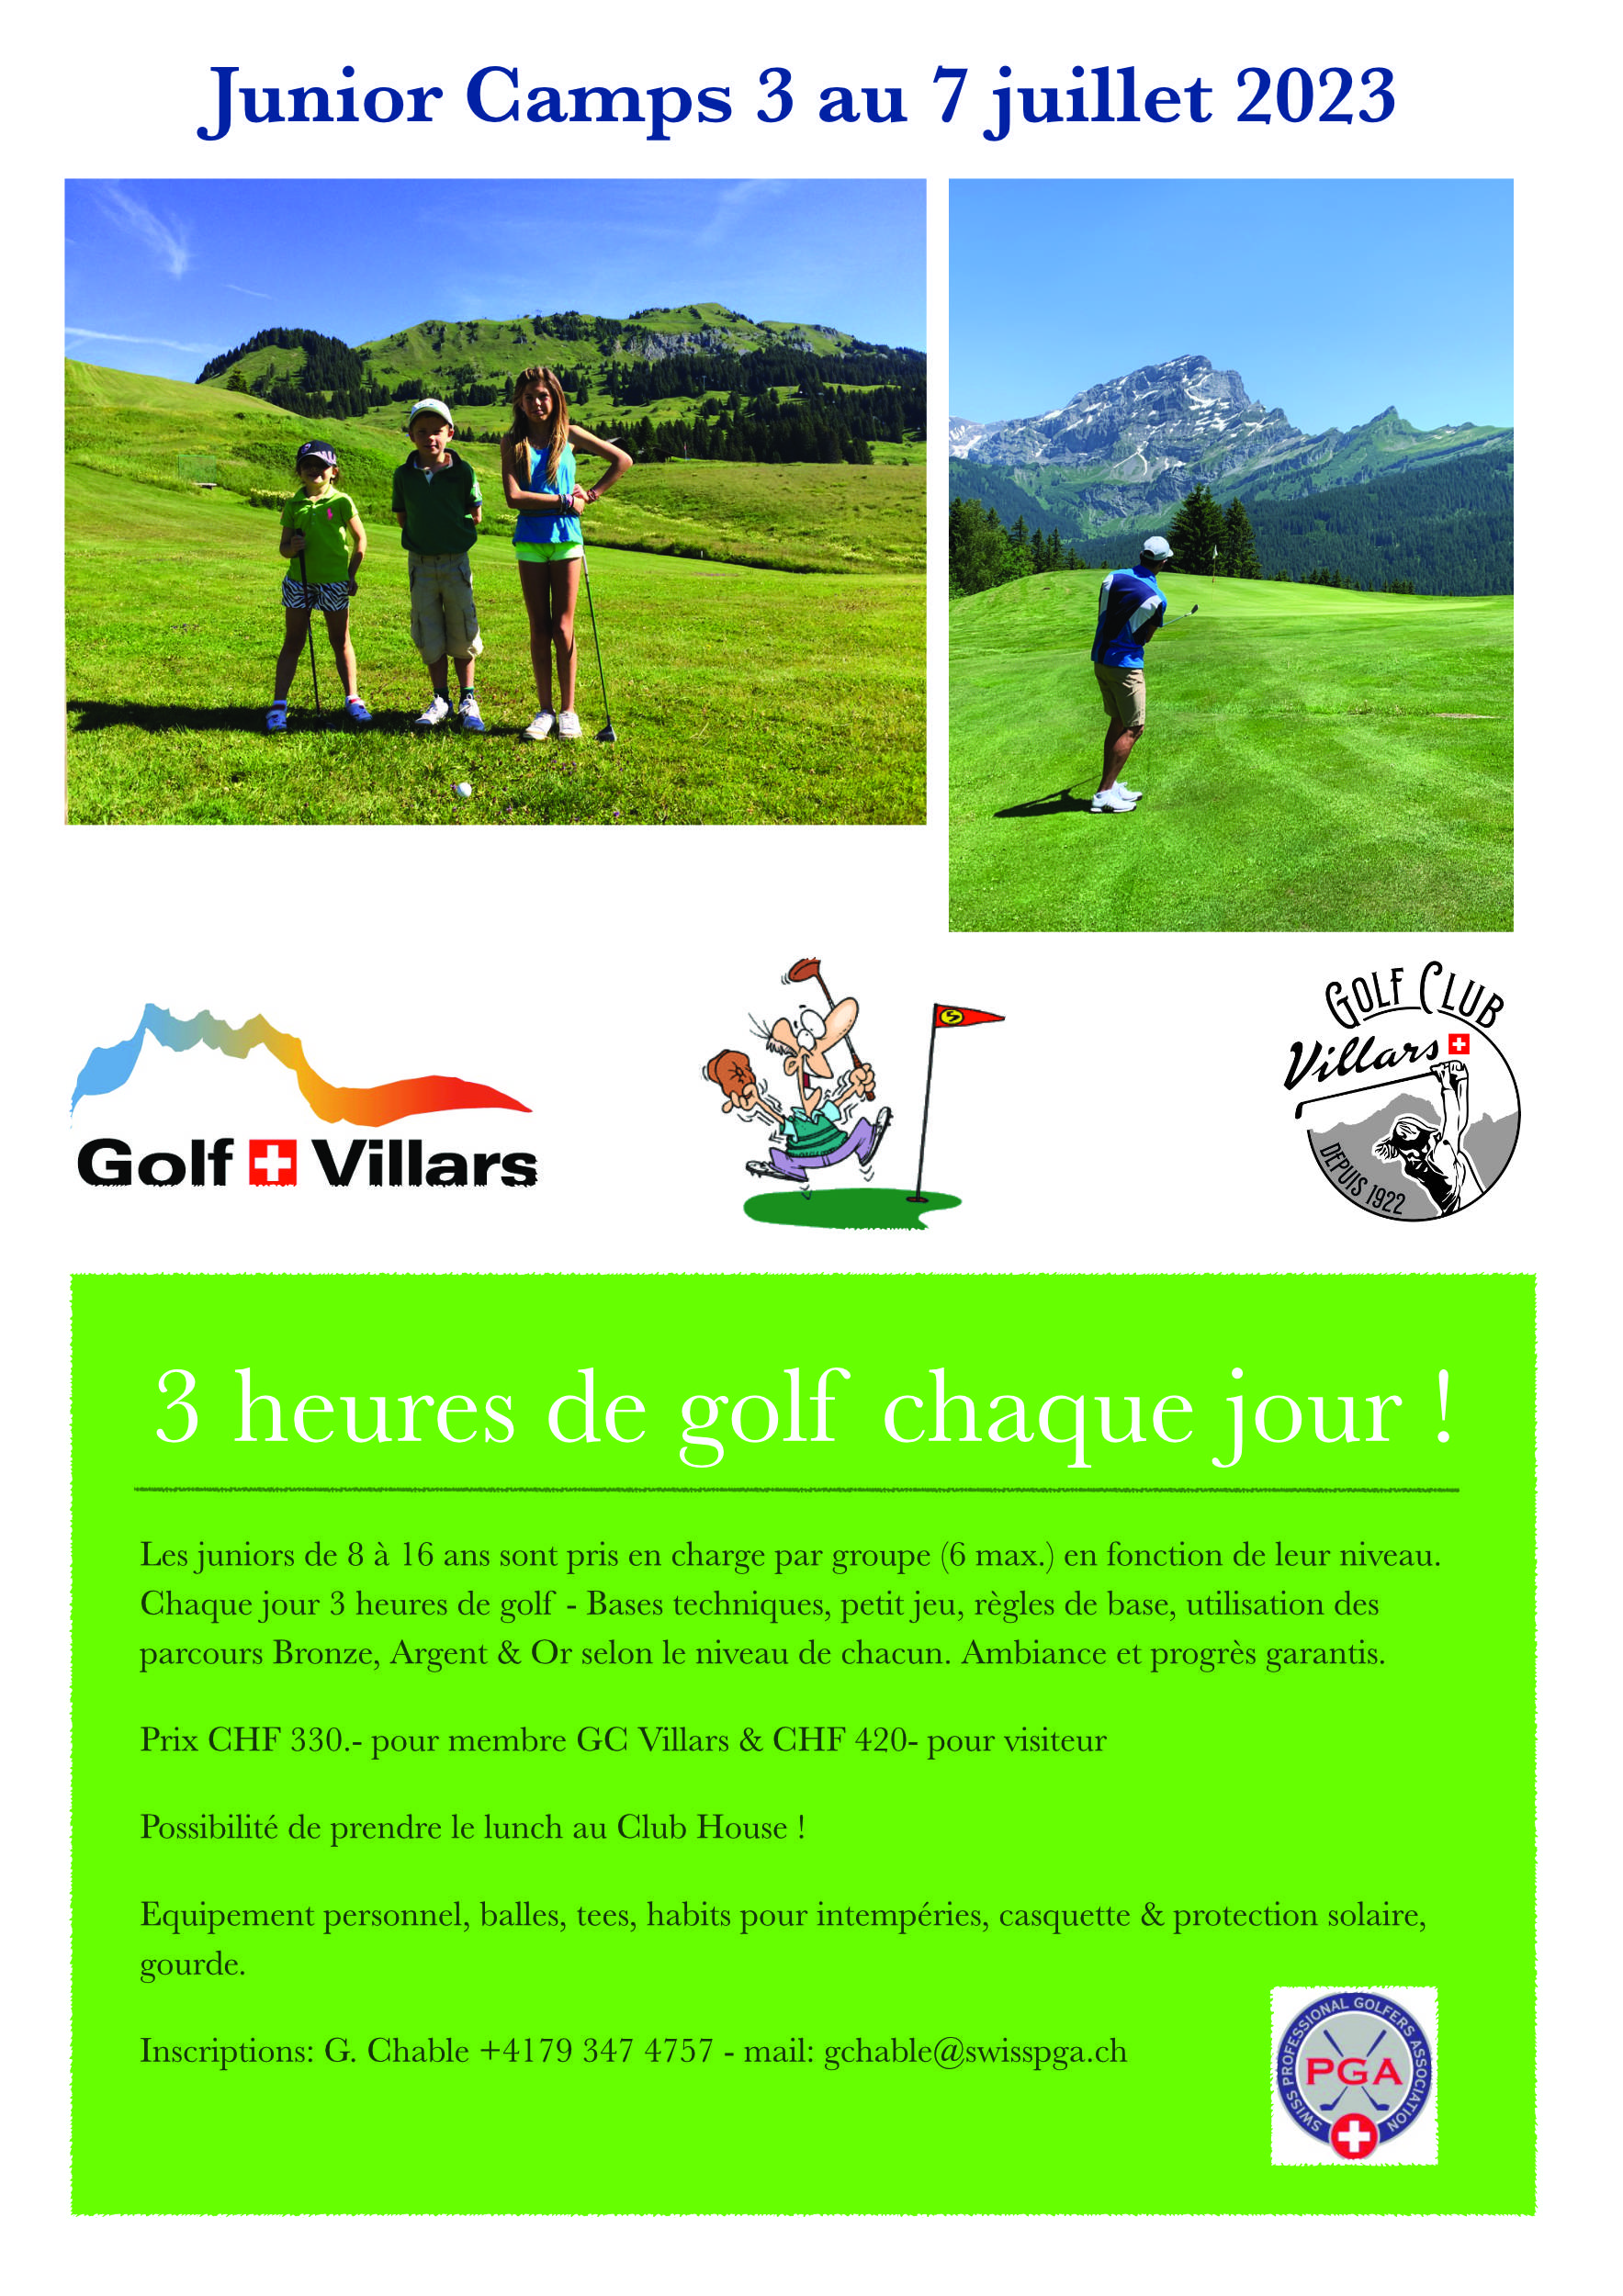 Golf Club Villars, Camps juniors 2023